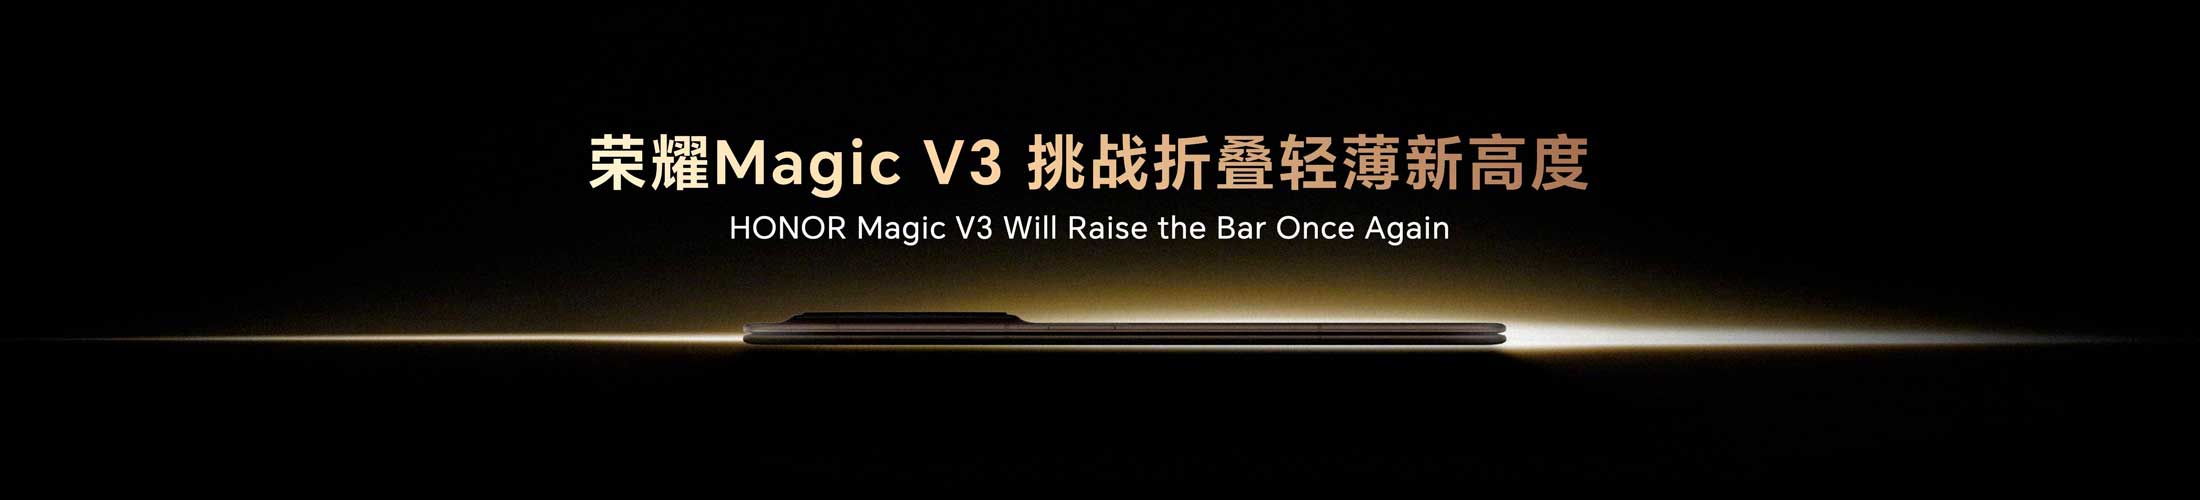 Magic V3 Honor Teaser